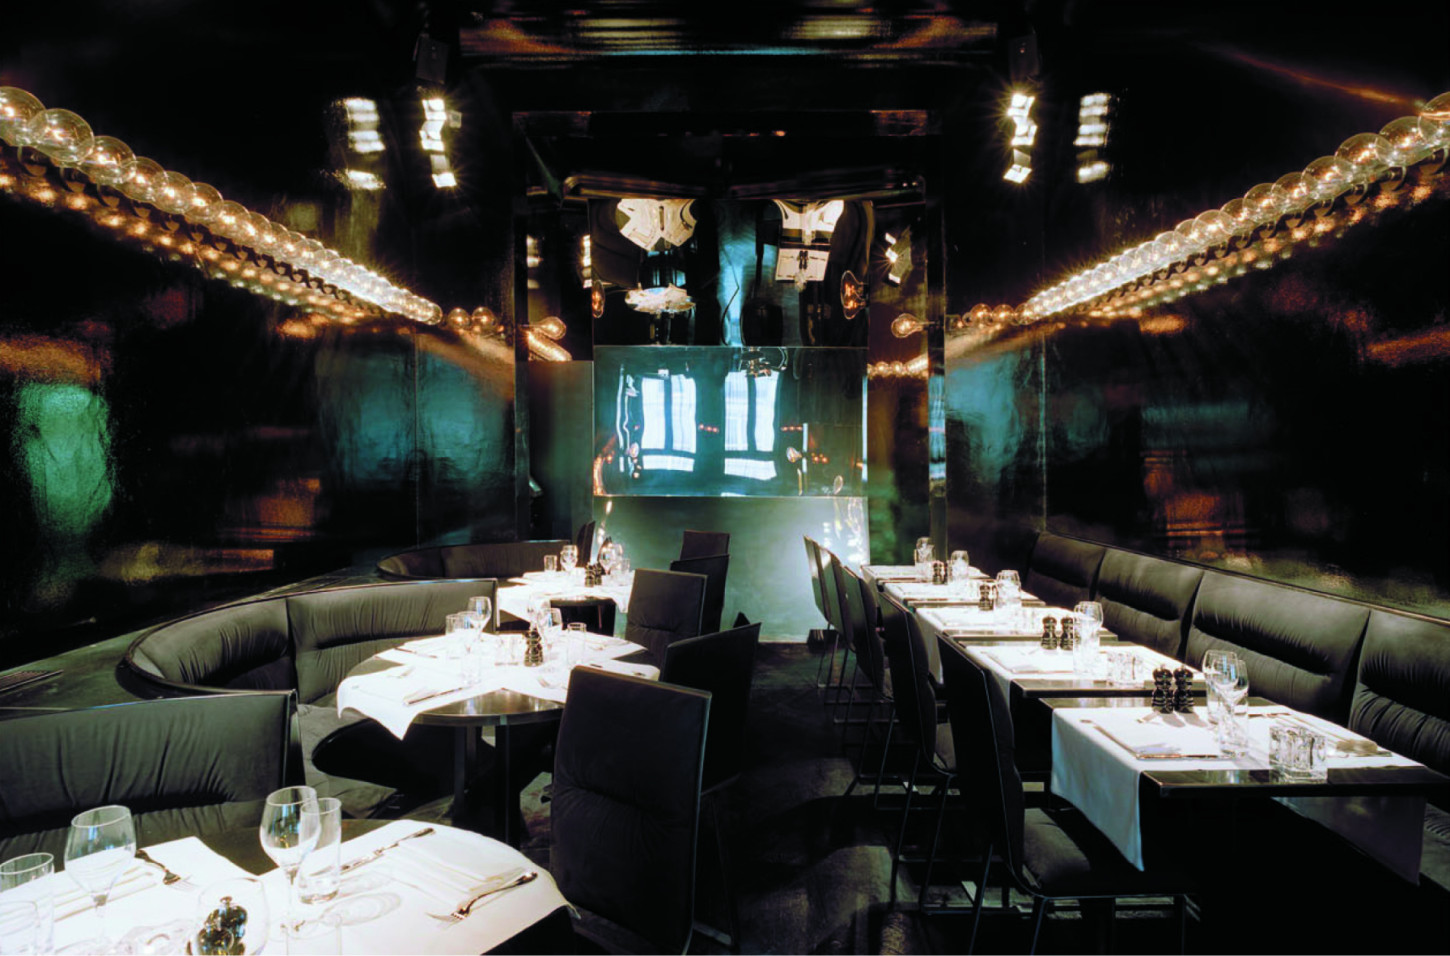 40BC Restaurant & Lounge par : cadre architecteur, travaux réalisés en 2006